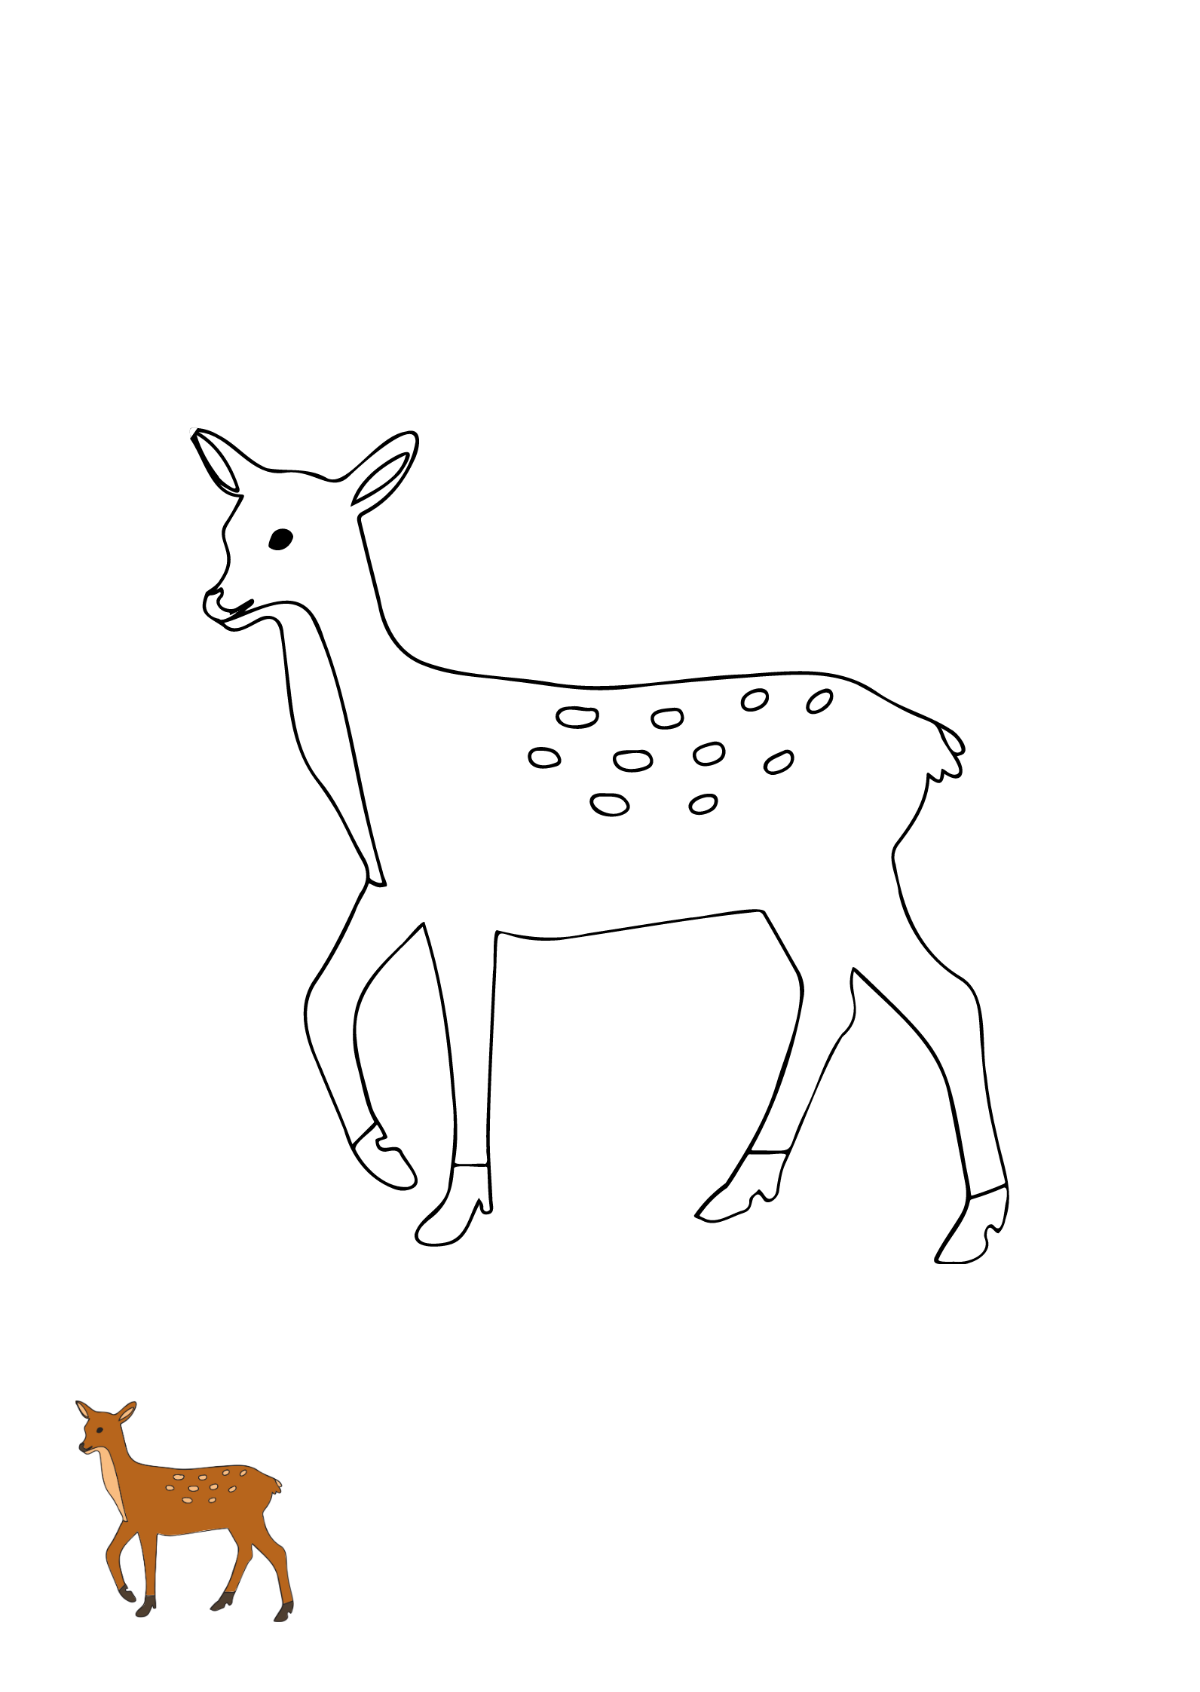 Doe Deer Coloring Page Template